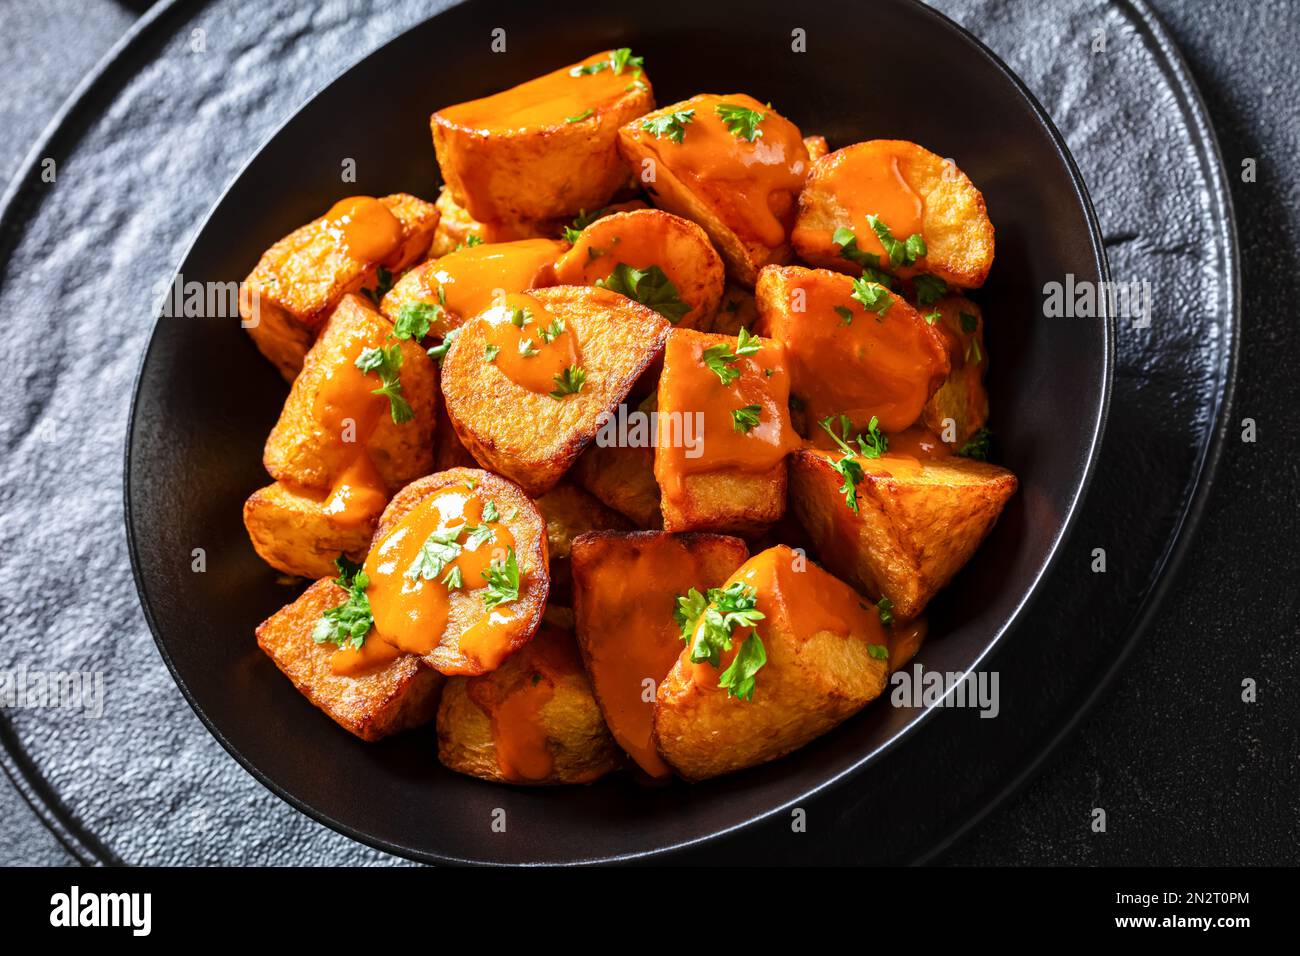 Nahaufnahme von Patatas bravas, frittierten Kartoffeln mit scharfer Sauce in schwarzer Schüssel auf Betontisch, spanische Küche Stockfoto